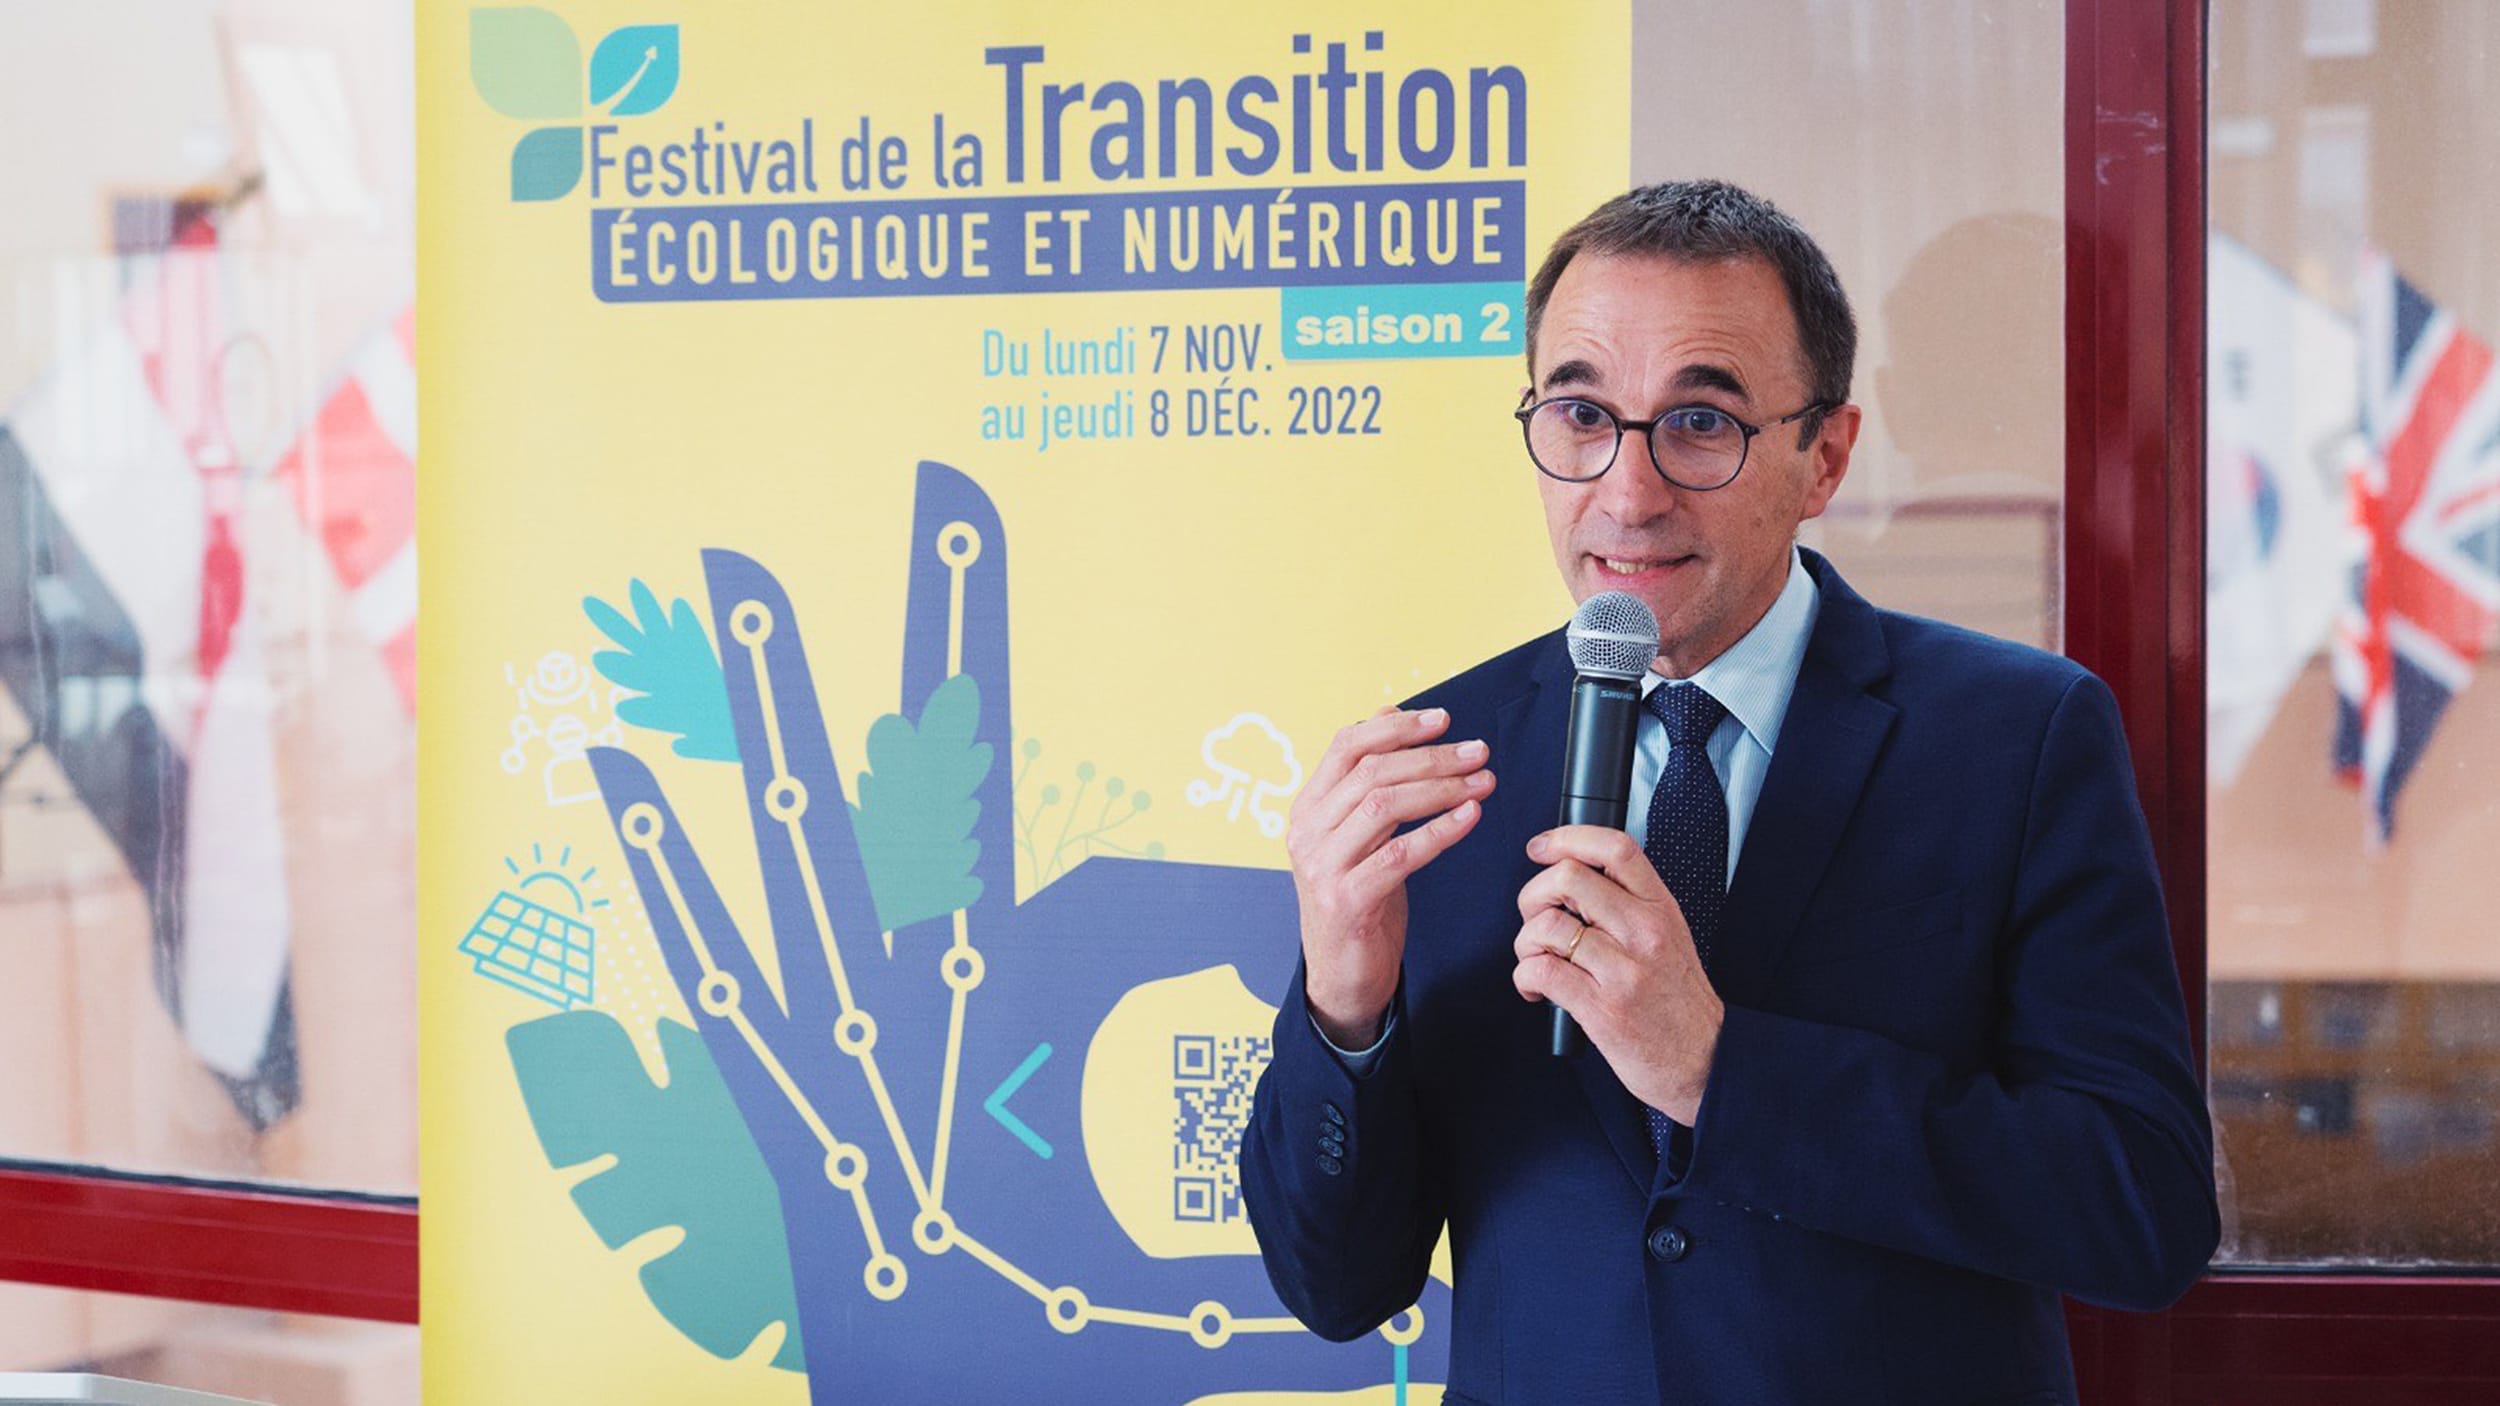 Festival de la transition écologique et numérique : Vocations vertes